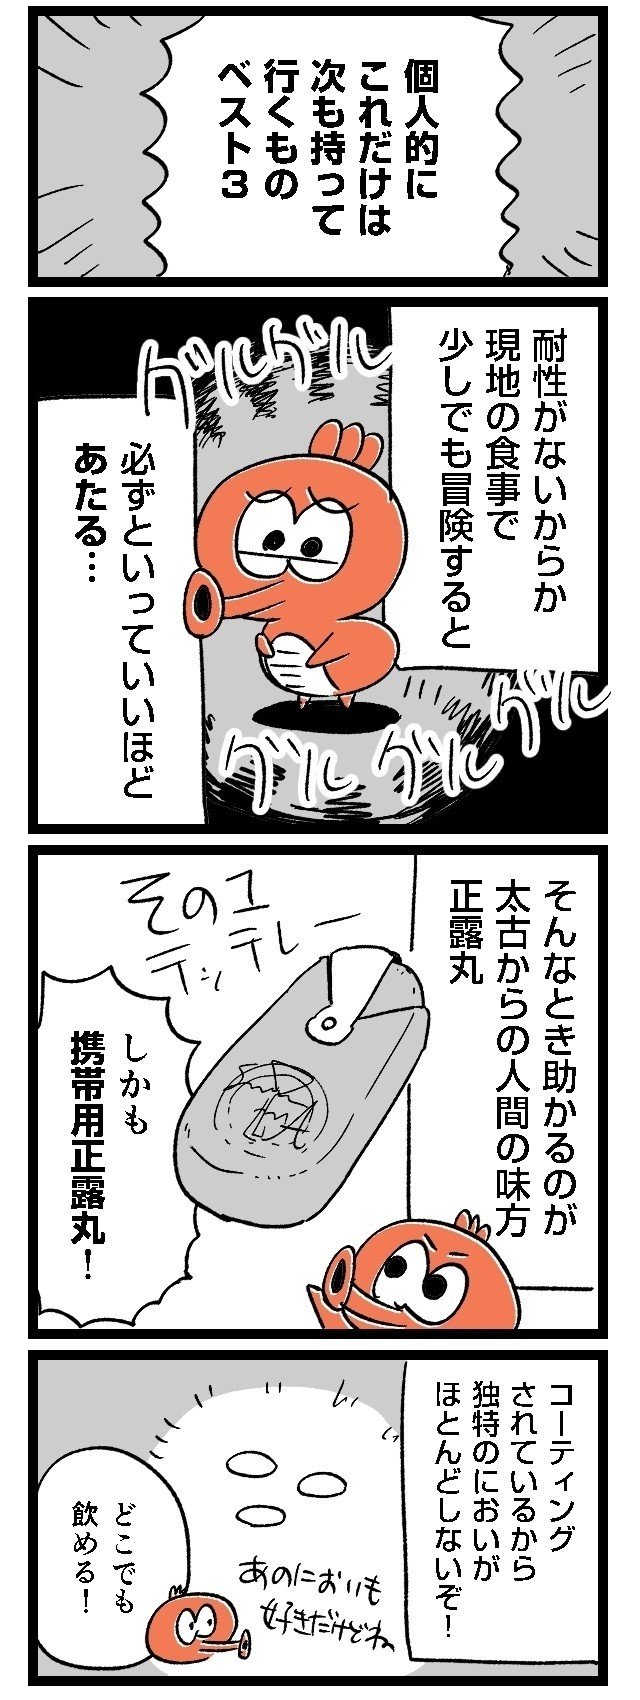 03ルポ漫画旅行_004